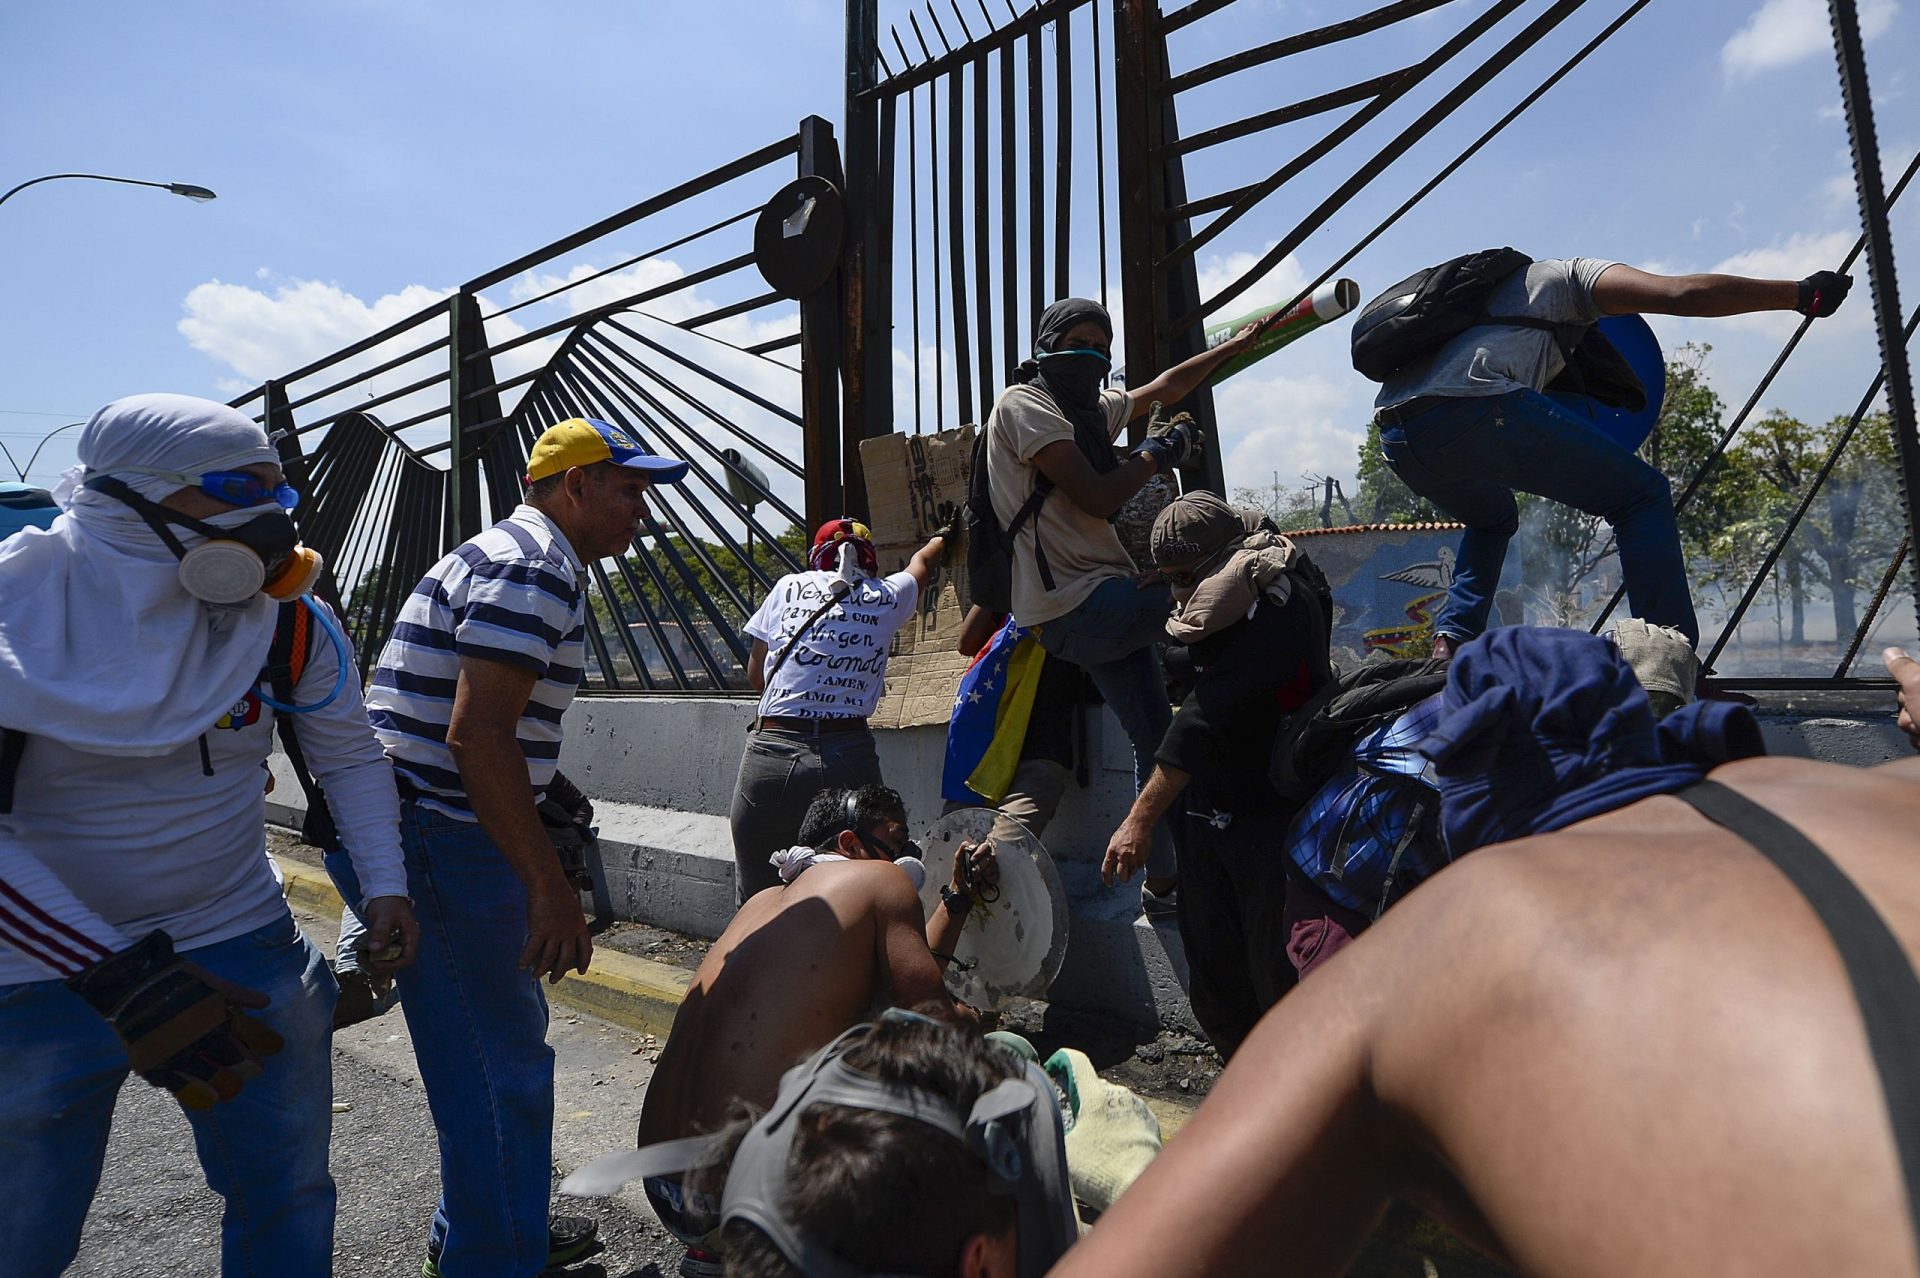 Veículo militar atropela grupo de civis na praça Altamira em Caracas | VÍDEO